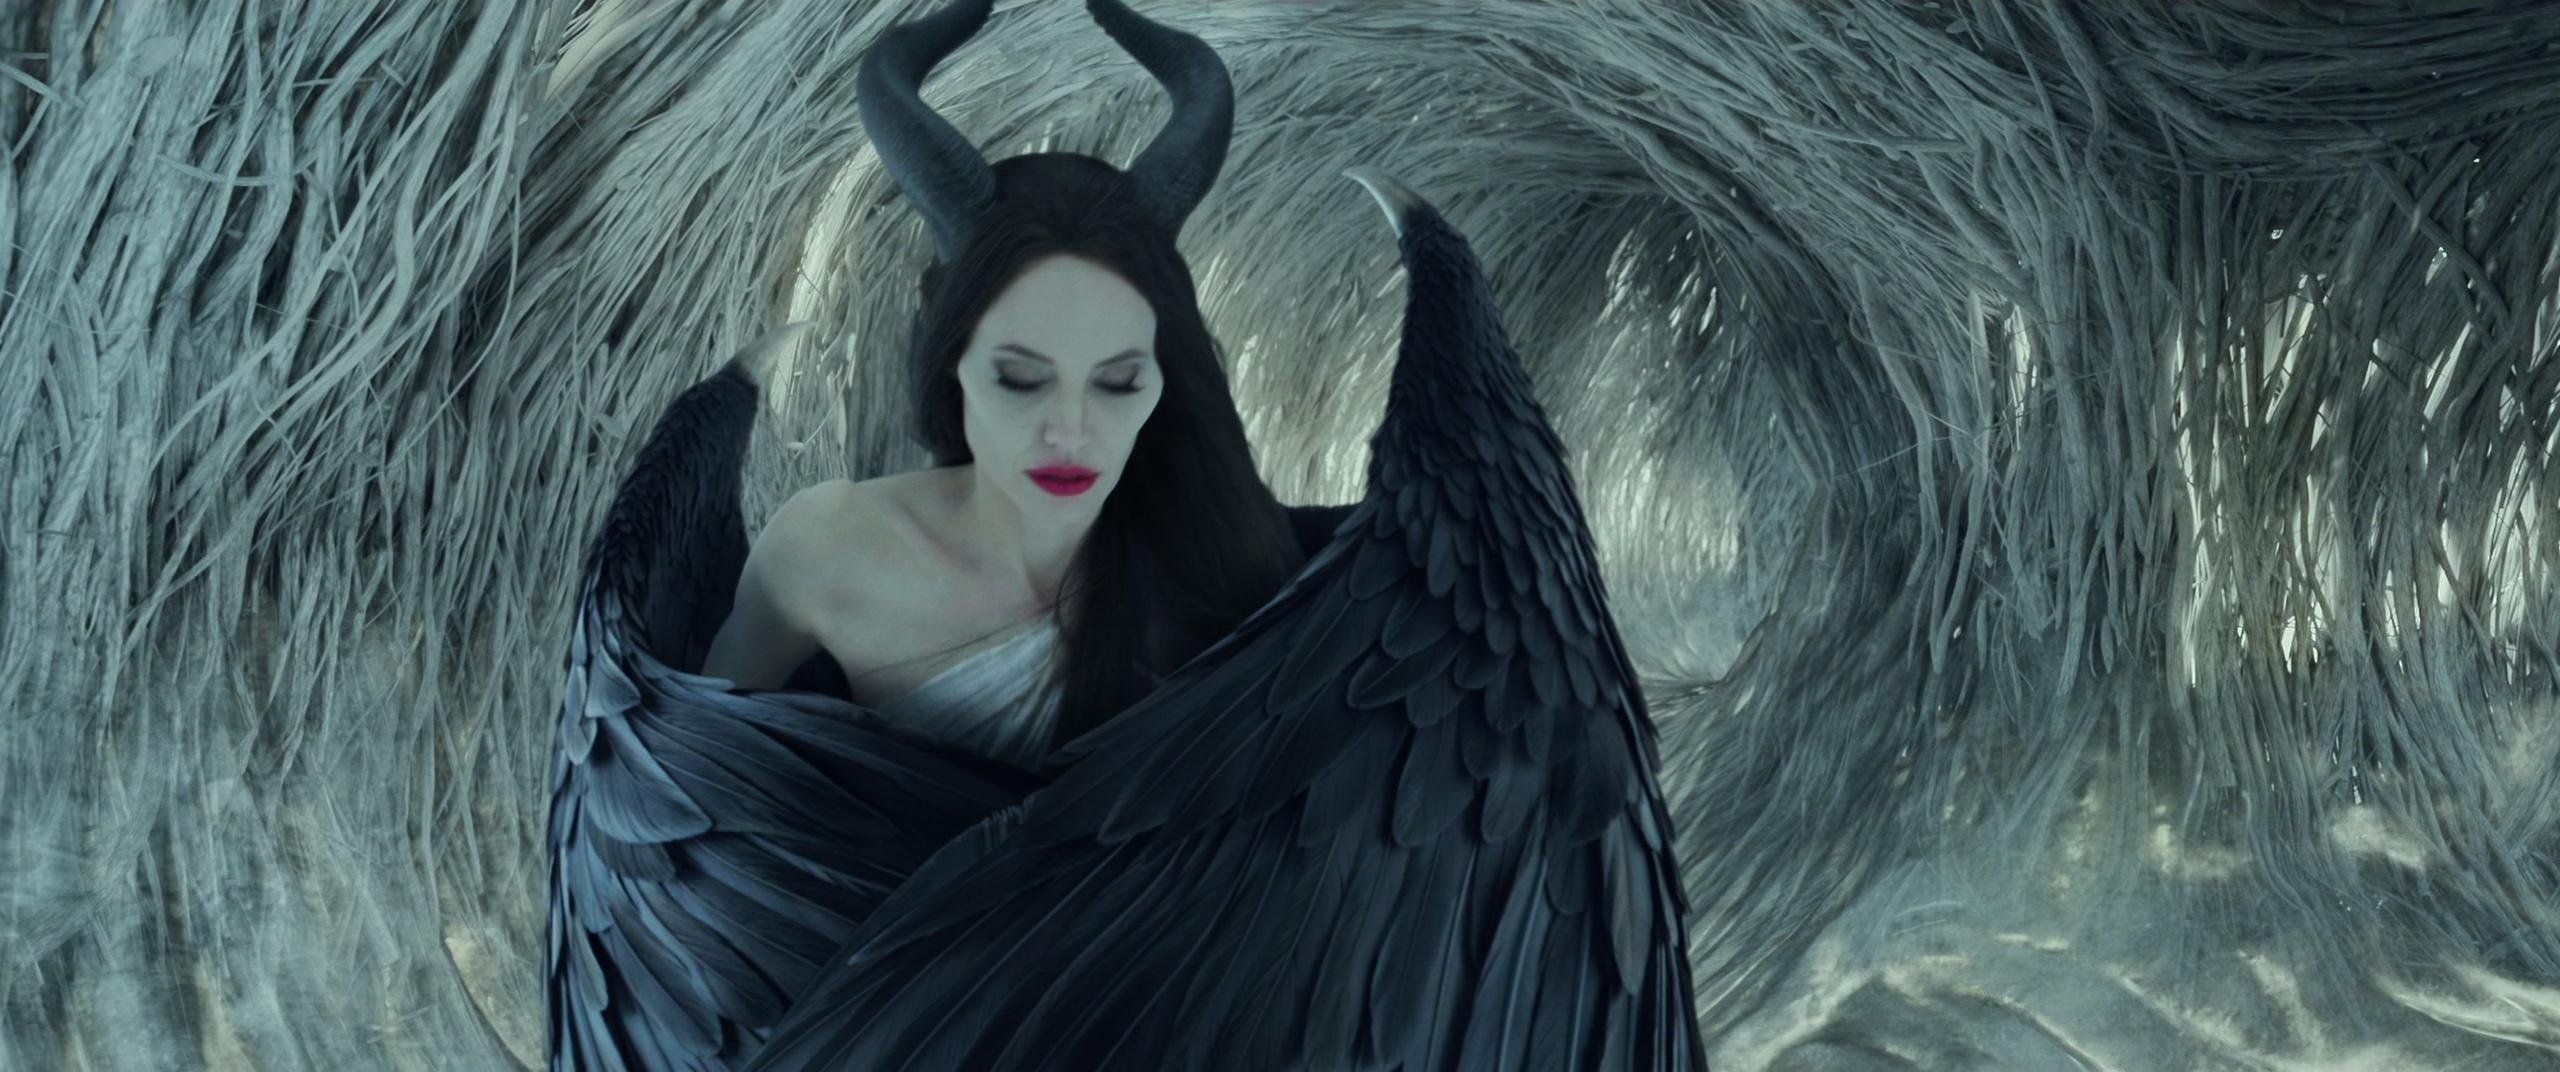 Maleficent: Signora del Male, otto curiosità sul film - Imperoland